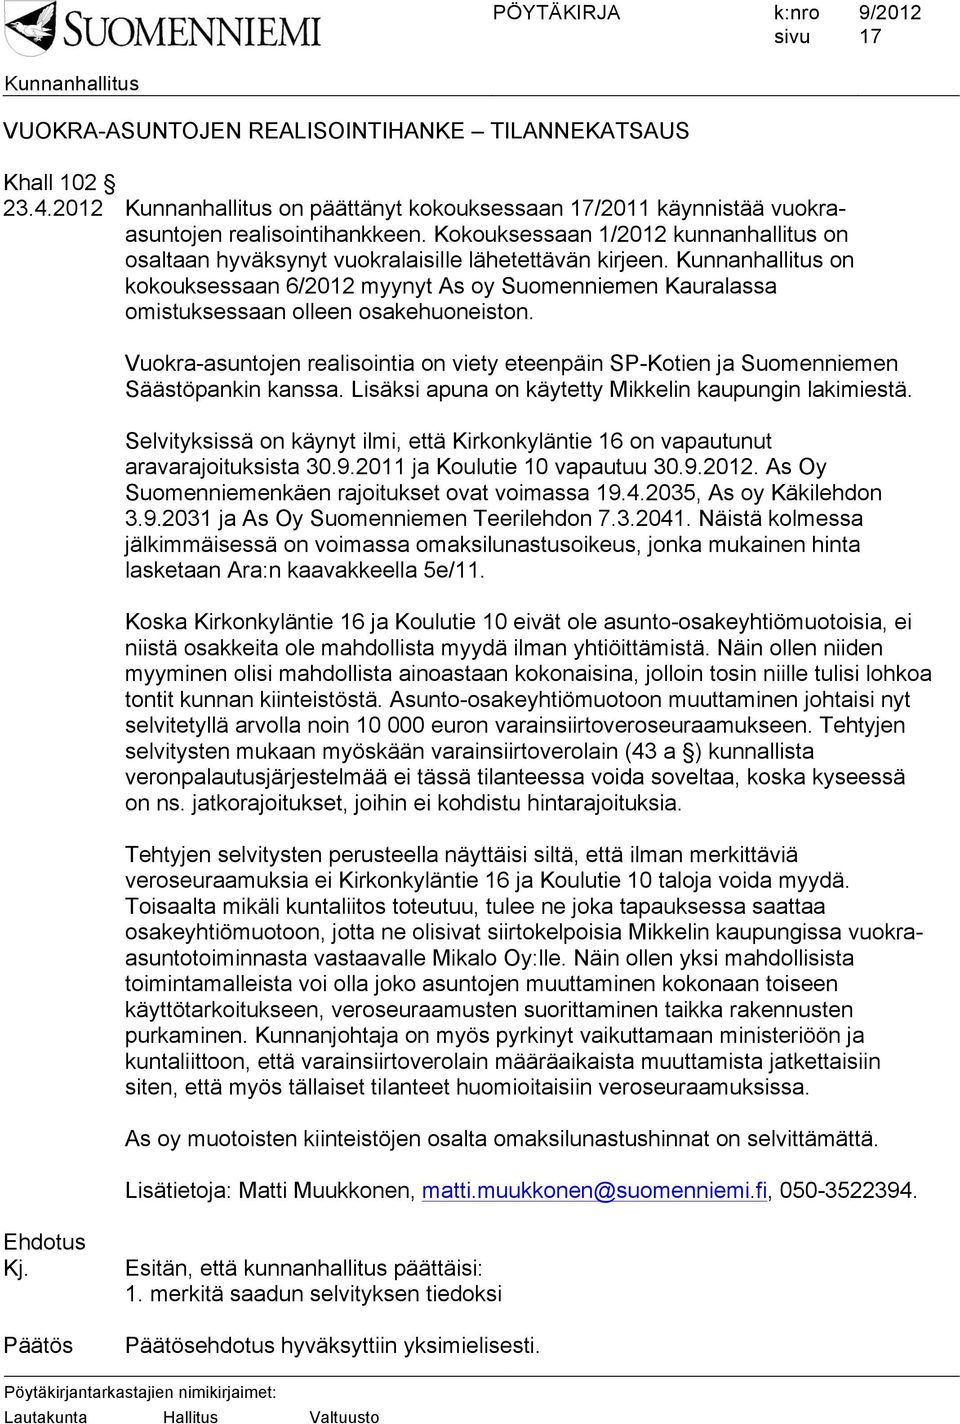 Vuokra-asuntojen realisointia on viety eteenpäin SP-Kotien ja Suomenniemen Säästöpankin kanssa. Lisäksi apuna on käytetty Mikkelin kaupungin lakimiestä.